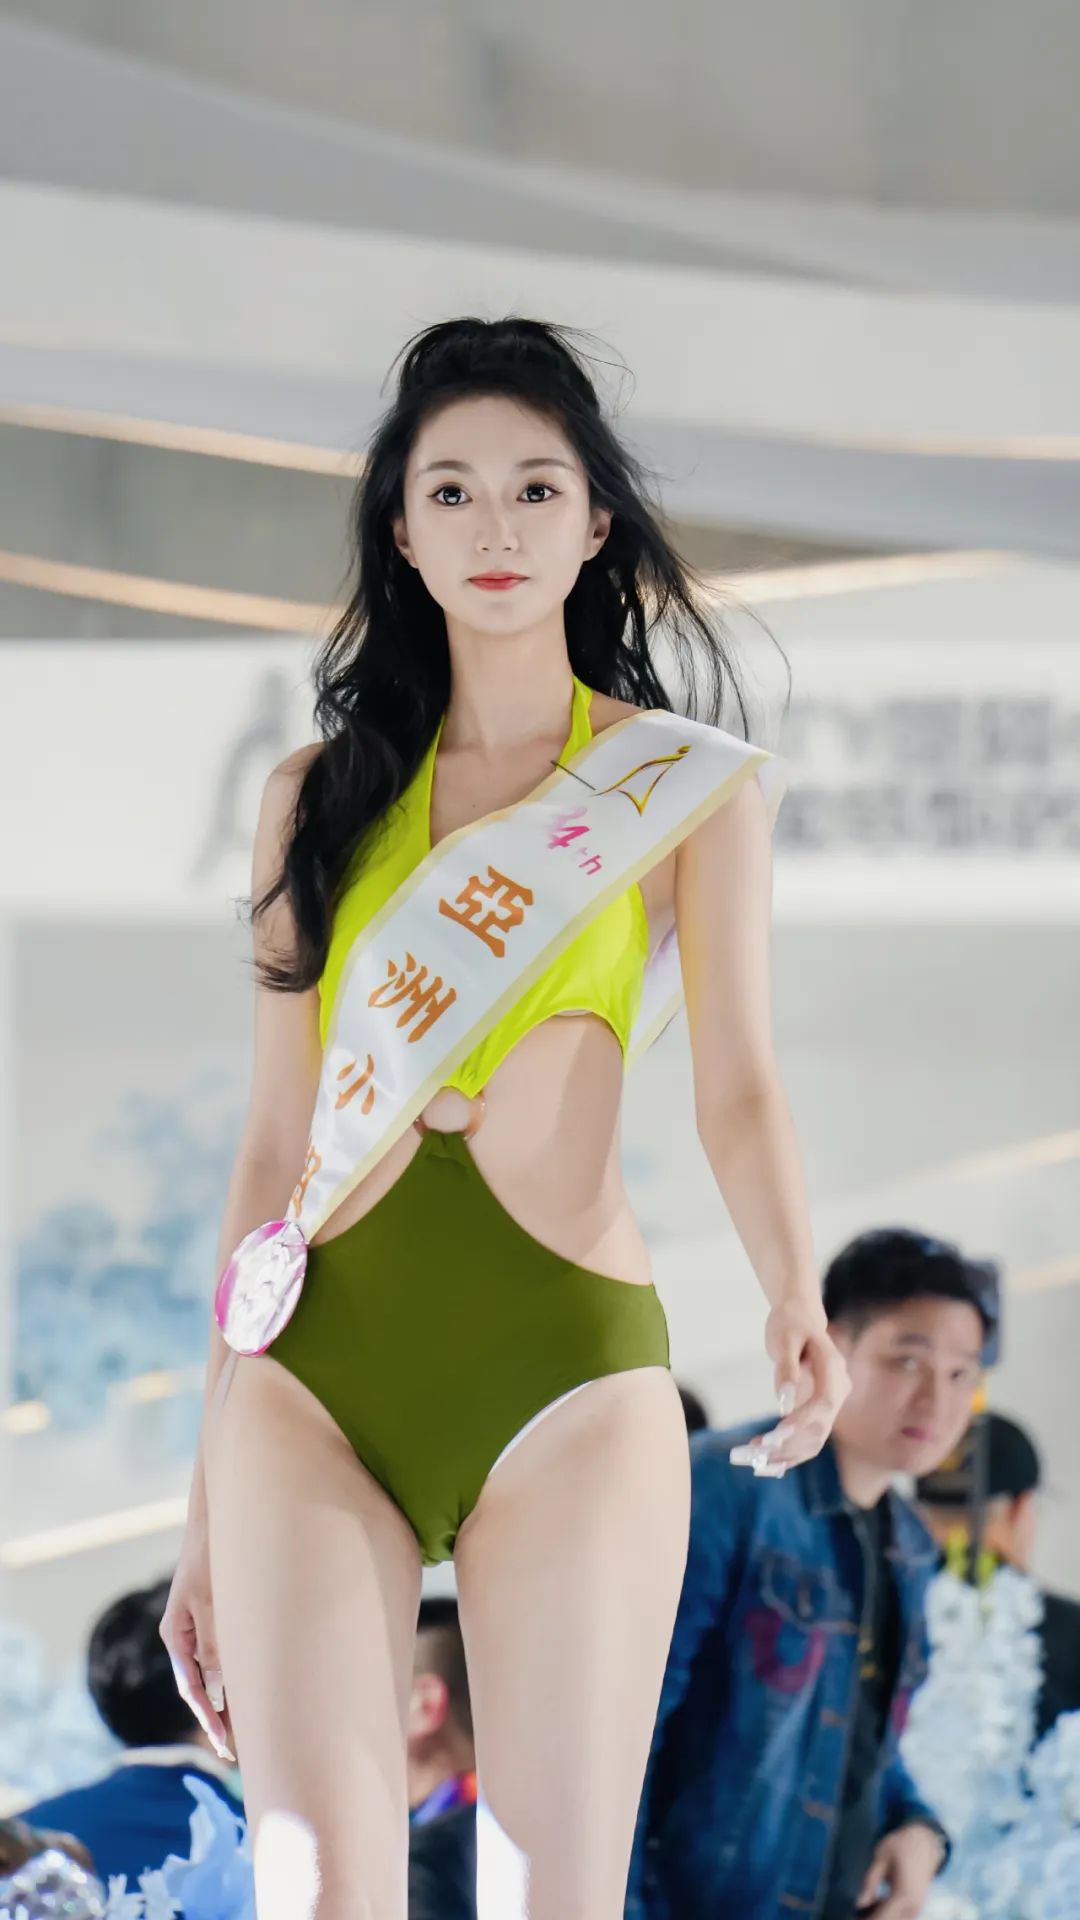 第34届亞洲小姐广州总决赛炫美收官